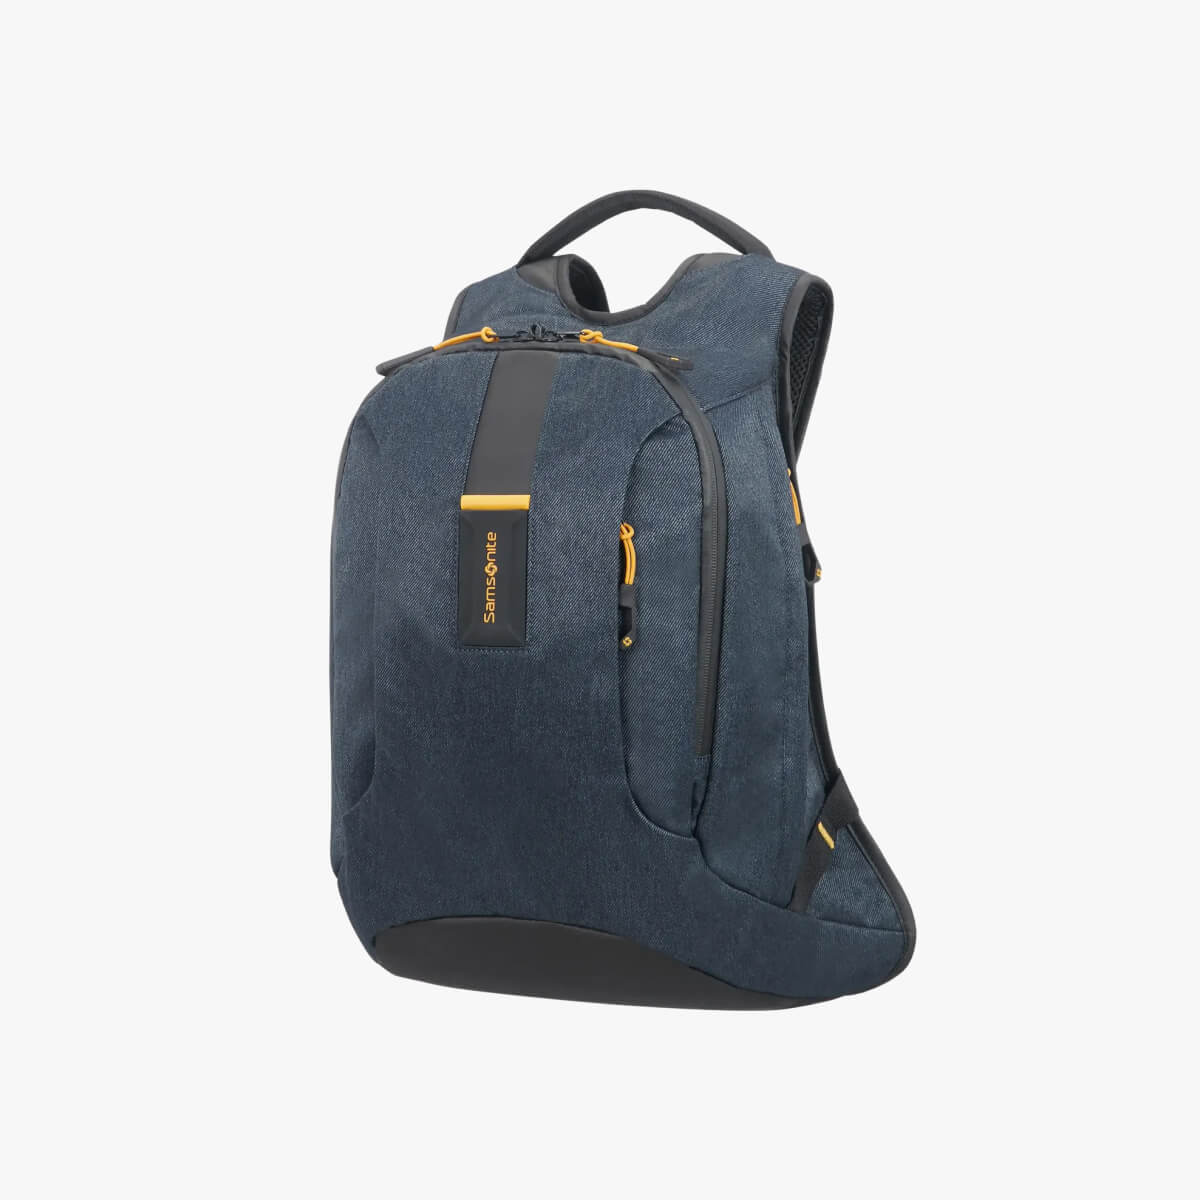 Samsonite Paradiver Backpack